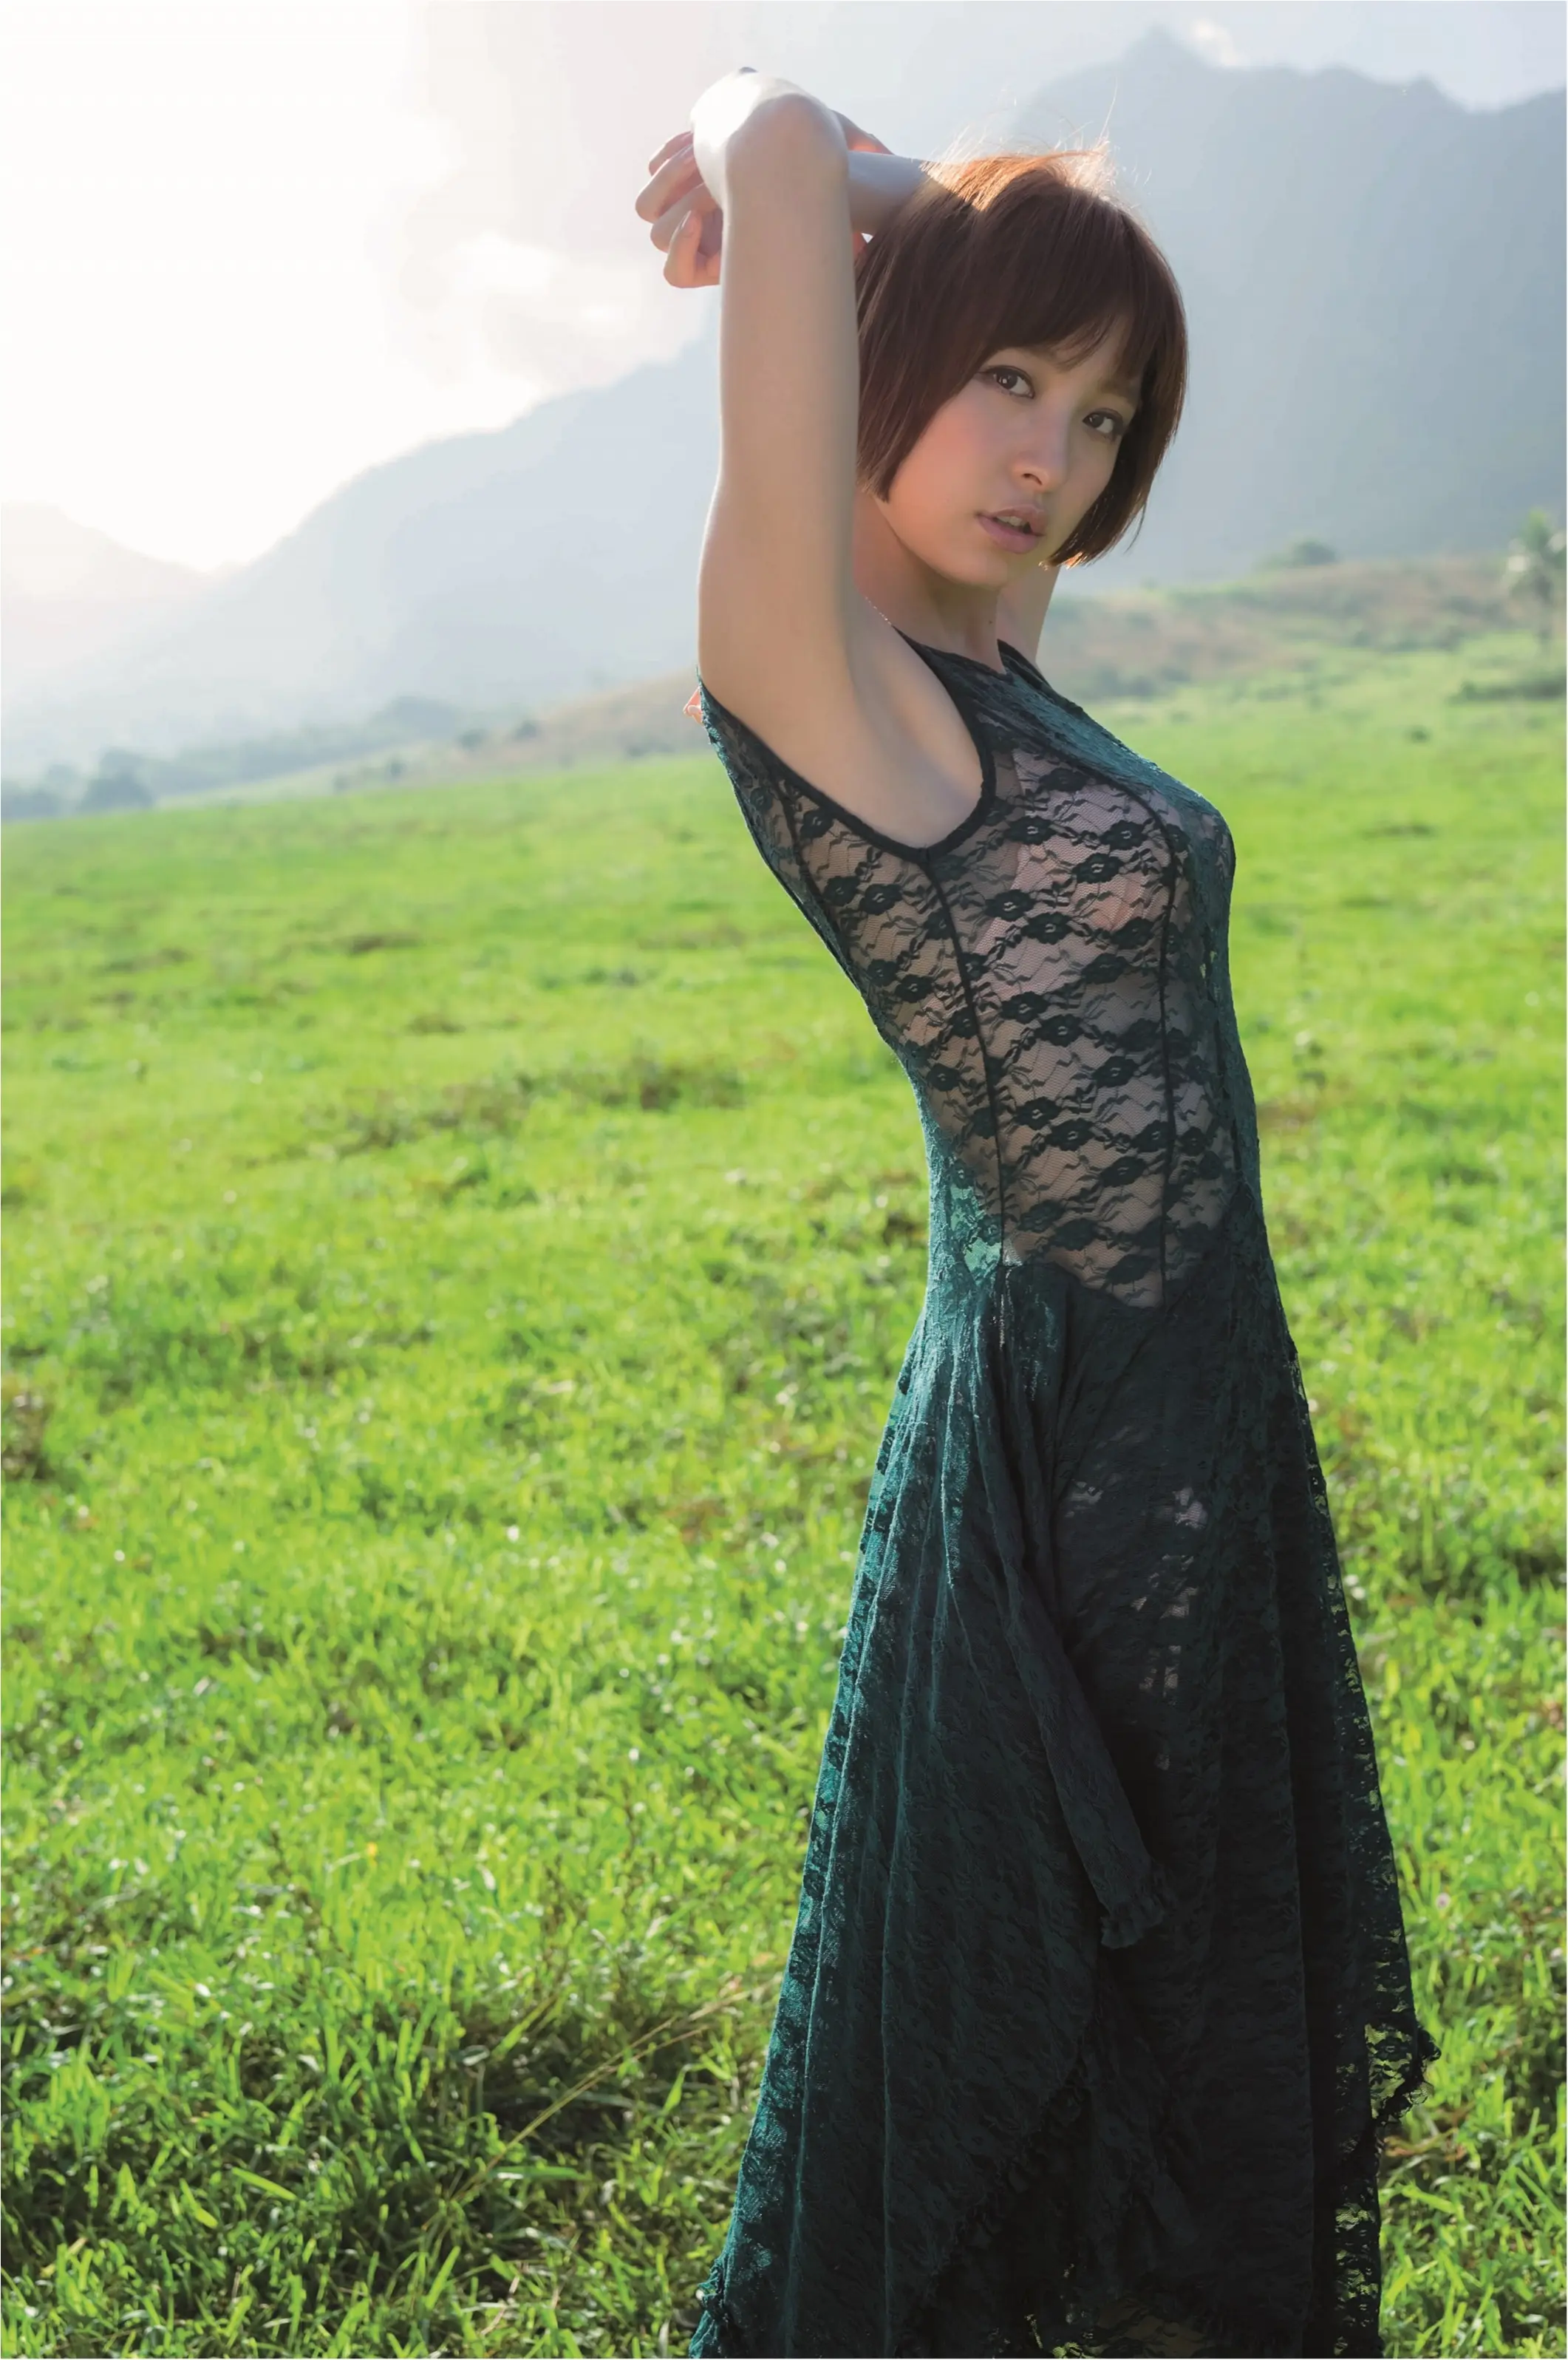 水着も満載 篠田麻里子の６年間をまとめた豪華写真集が出たっ ライフスタイル最新情報 Daily More